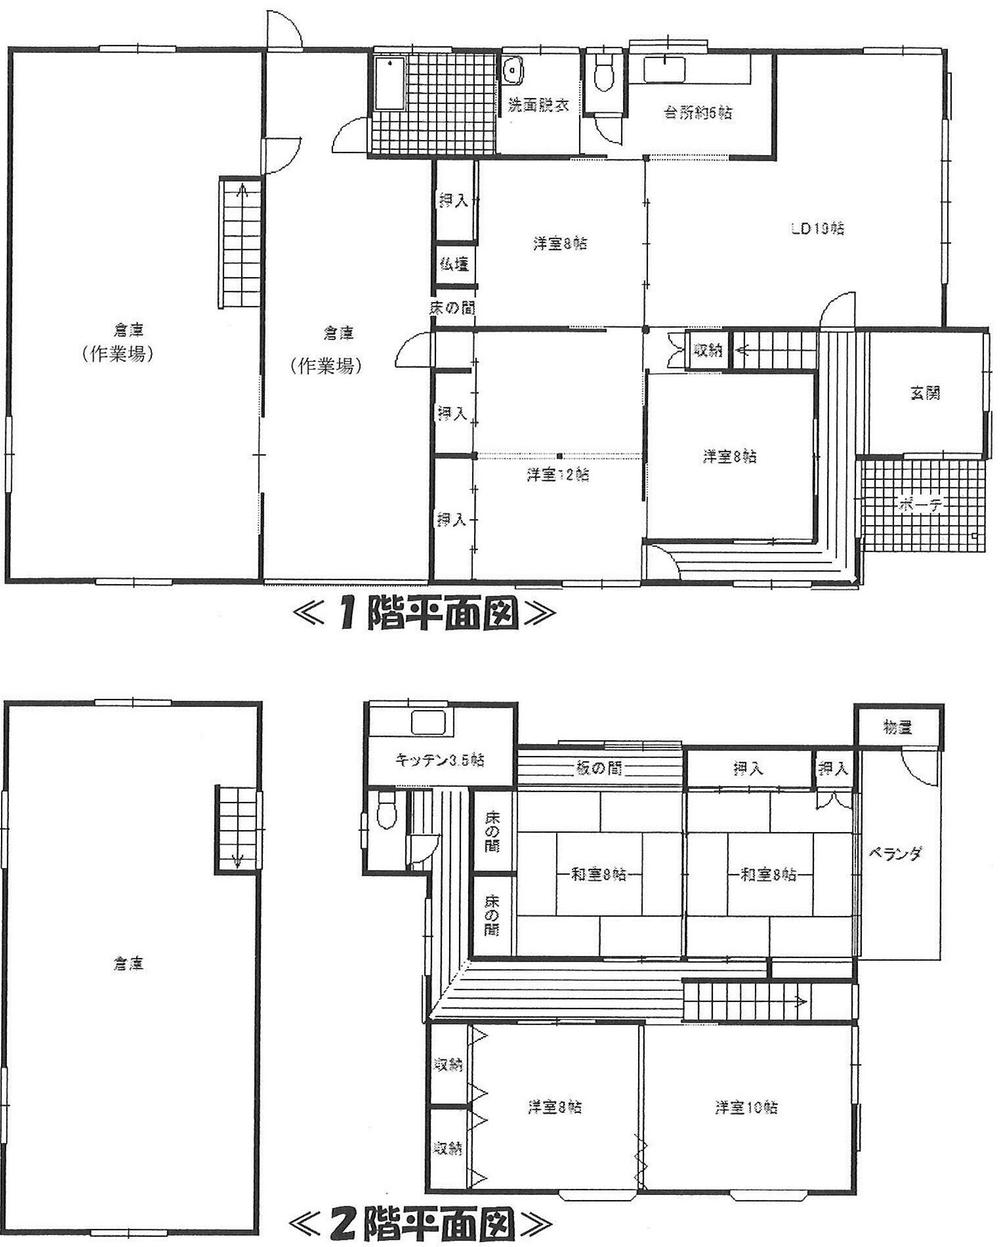 Floor plan. 15 million yen, 7LDK, Land area 470.85 sq m , Building area 346.14 sq m